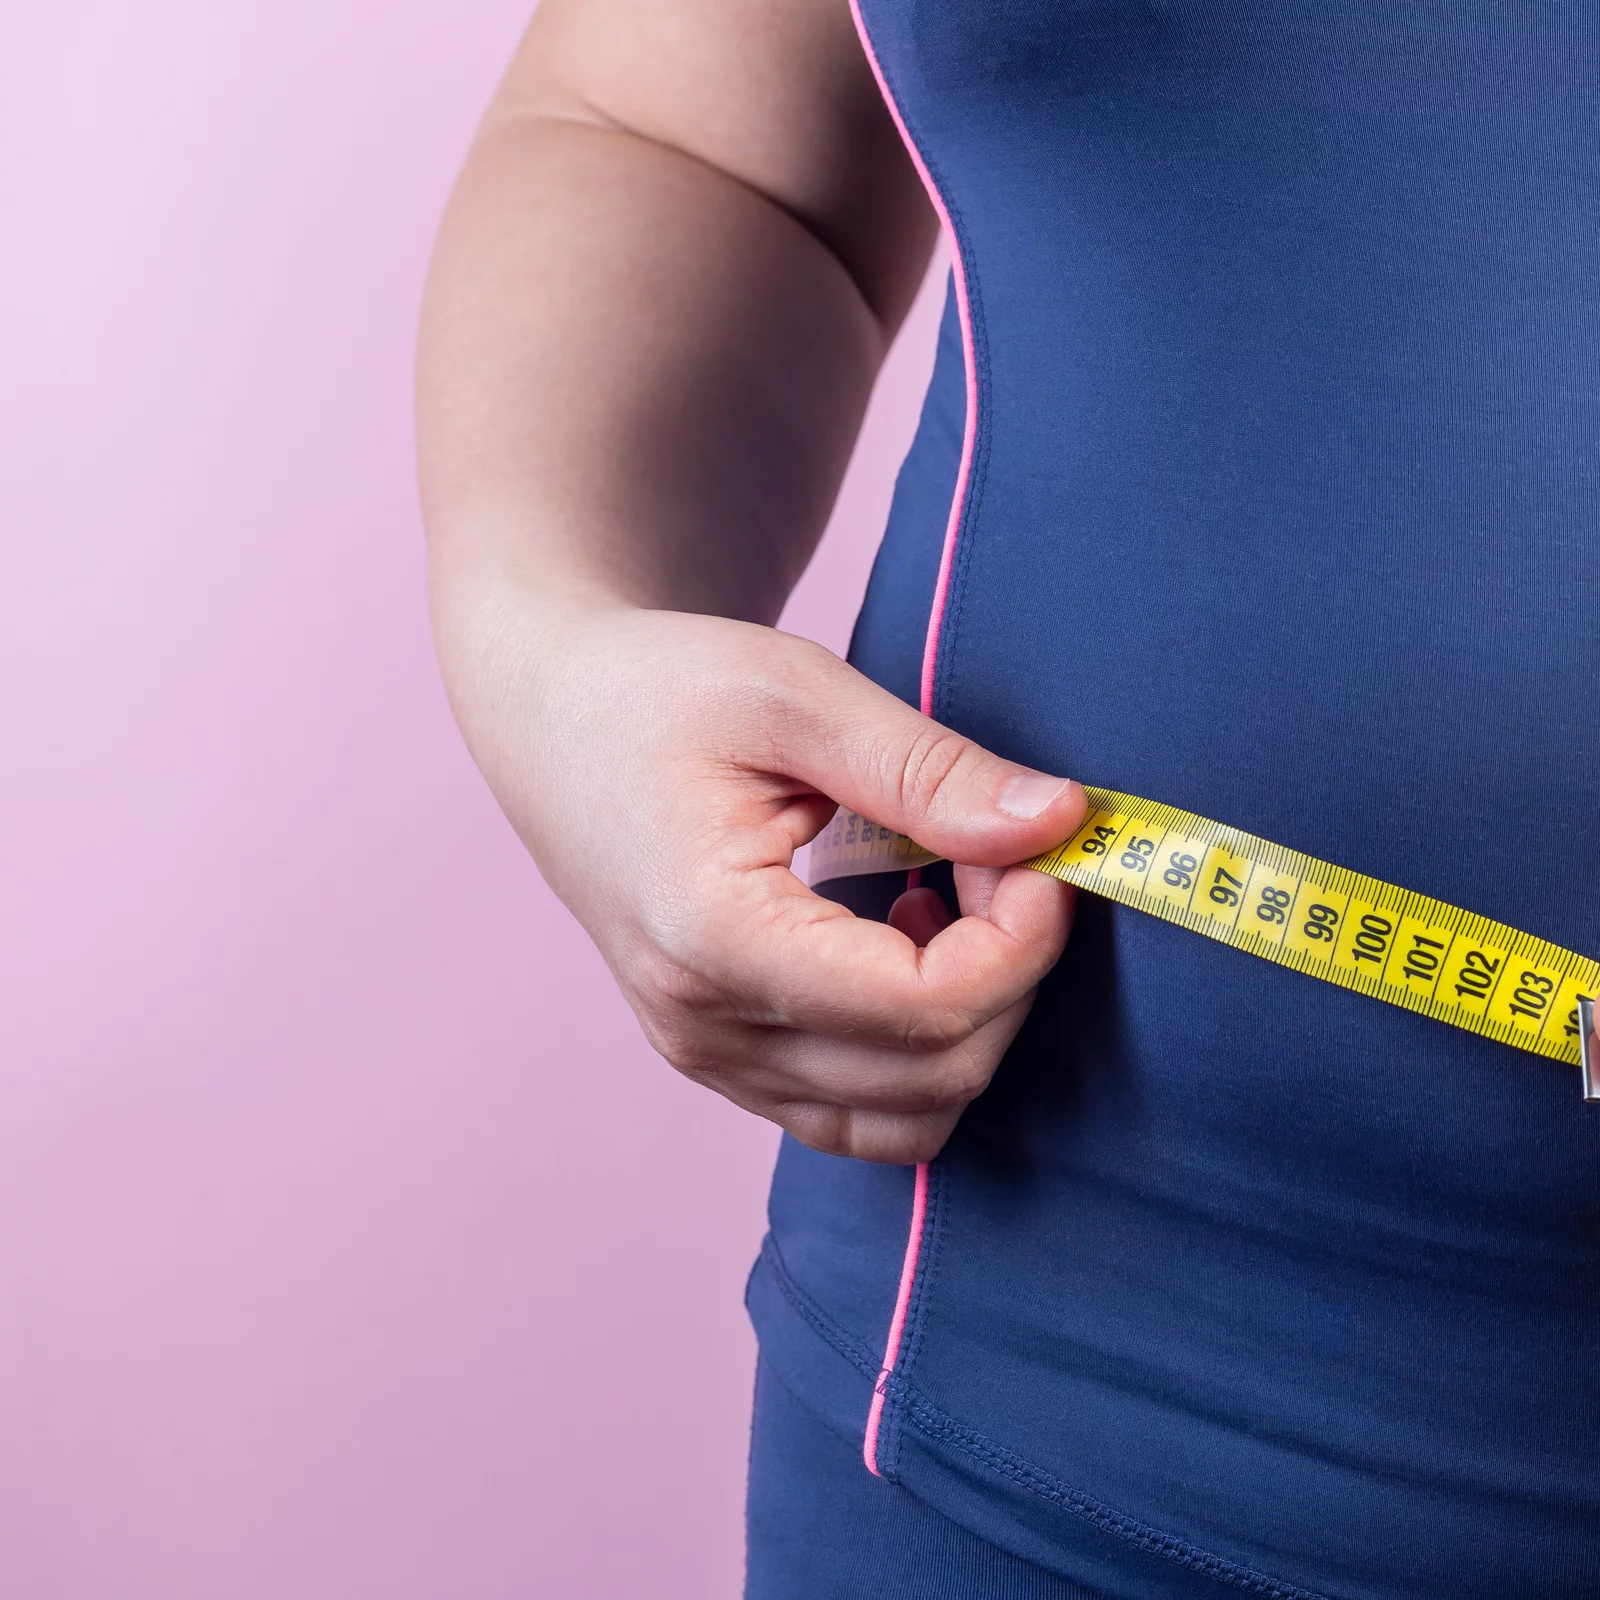 Wie wird Übergewicht oder adipositas behandelt?